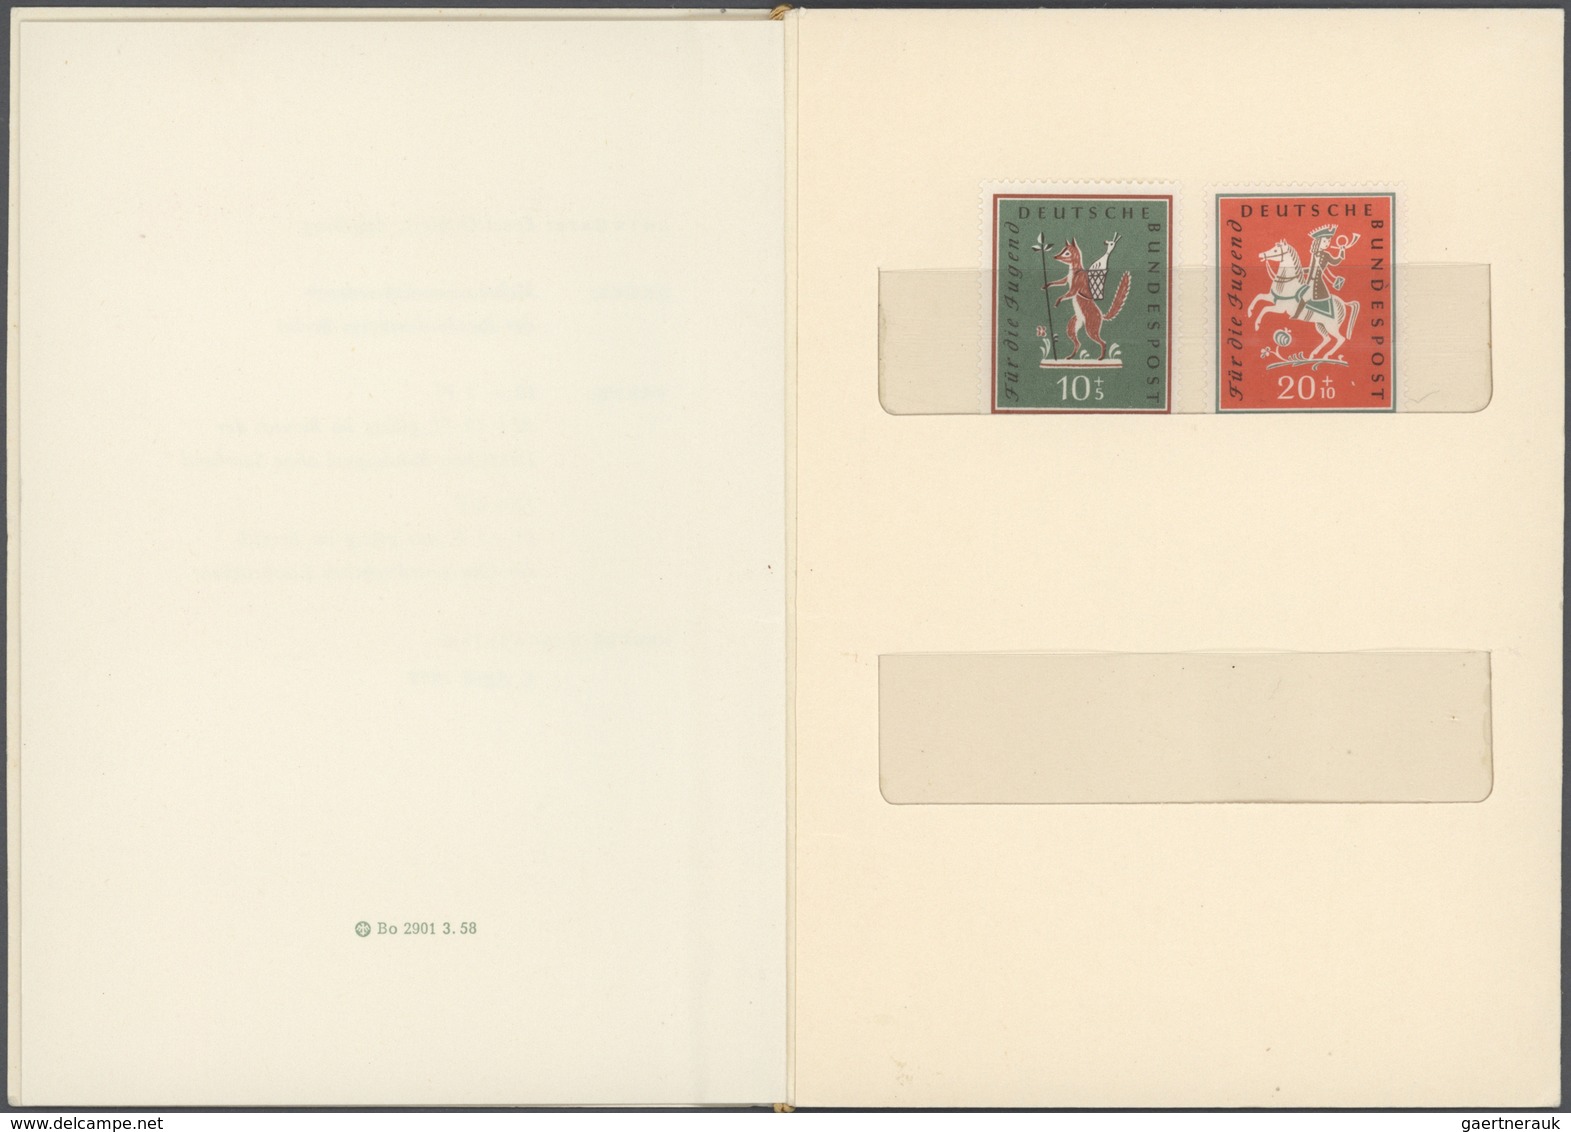 Bundesrepublik Deutschland: 1958/1997, umfassende Sammlung von ca. 910 Minister-Geschenkkarten (incl